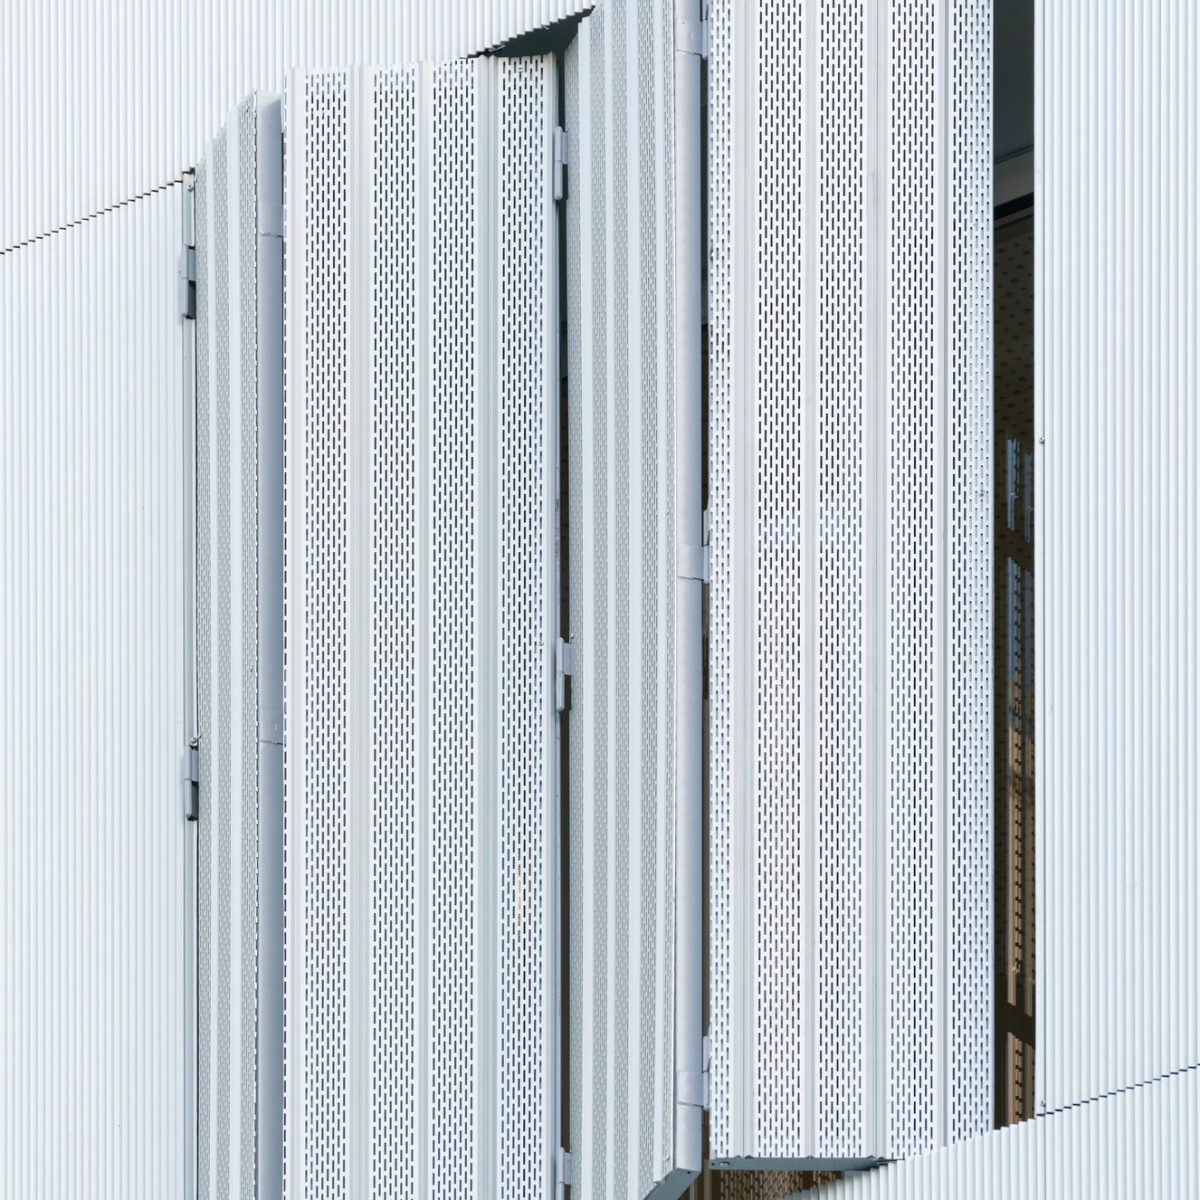 Rehabilitación de fachada ventilada con aluminio para la arquitectura